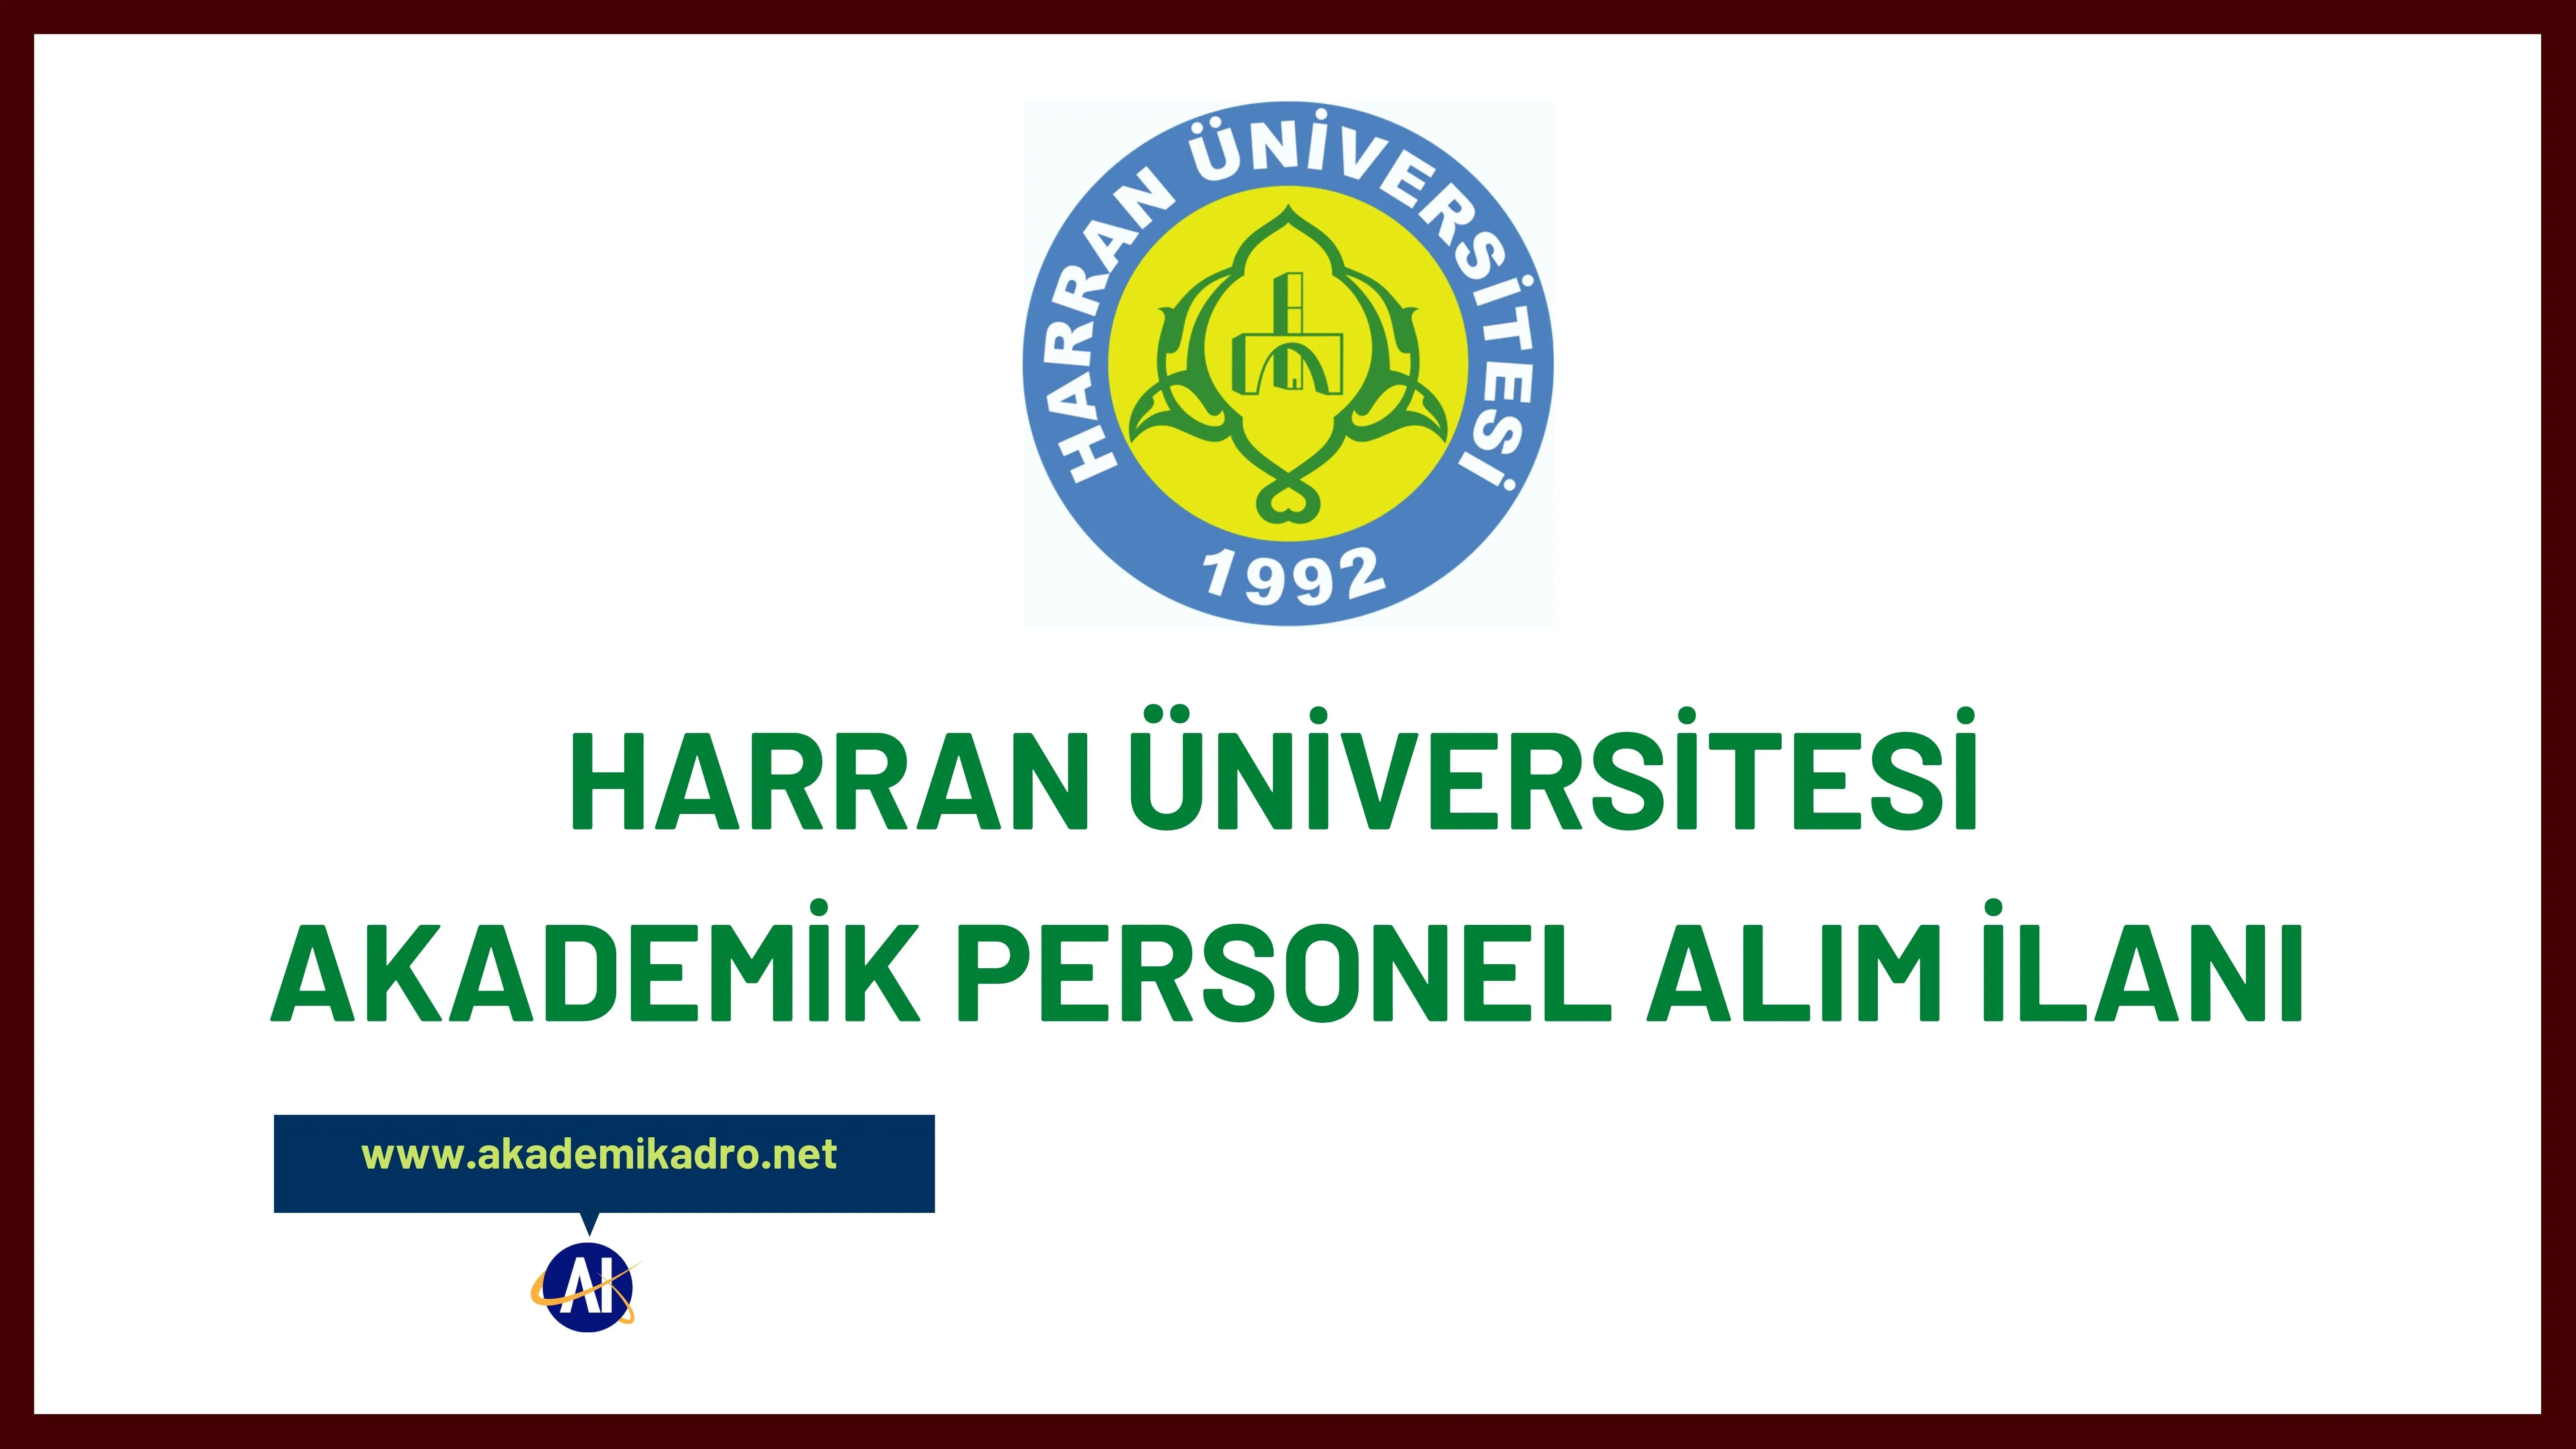 Harran Üniversitesi birçok alandan 43 öğretim üyesi alacak.